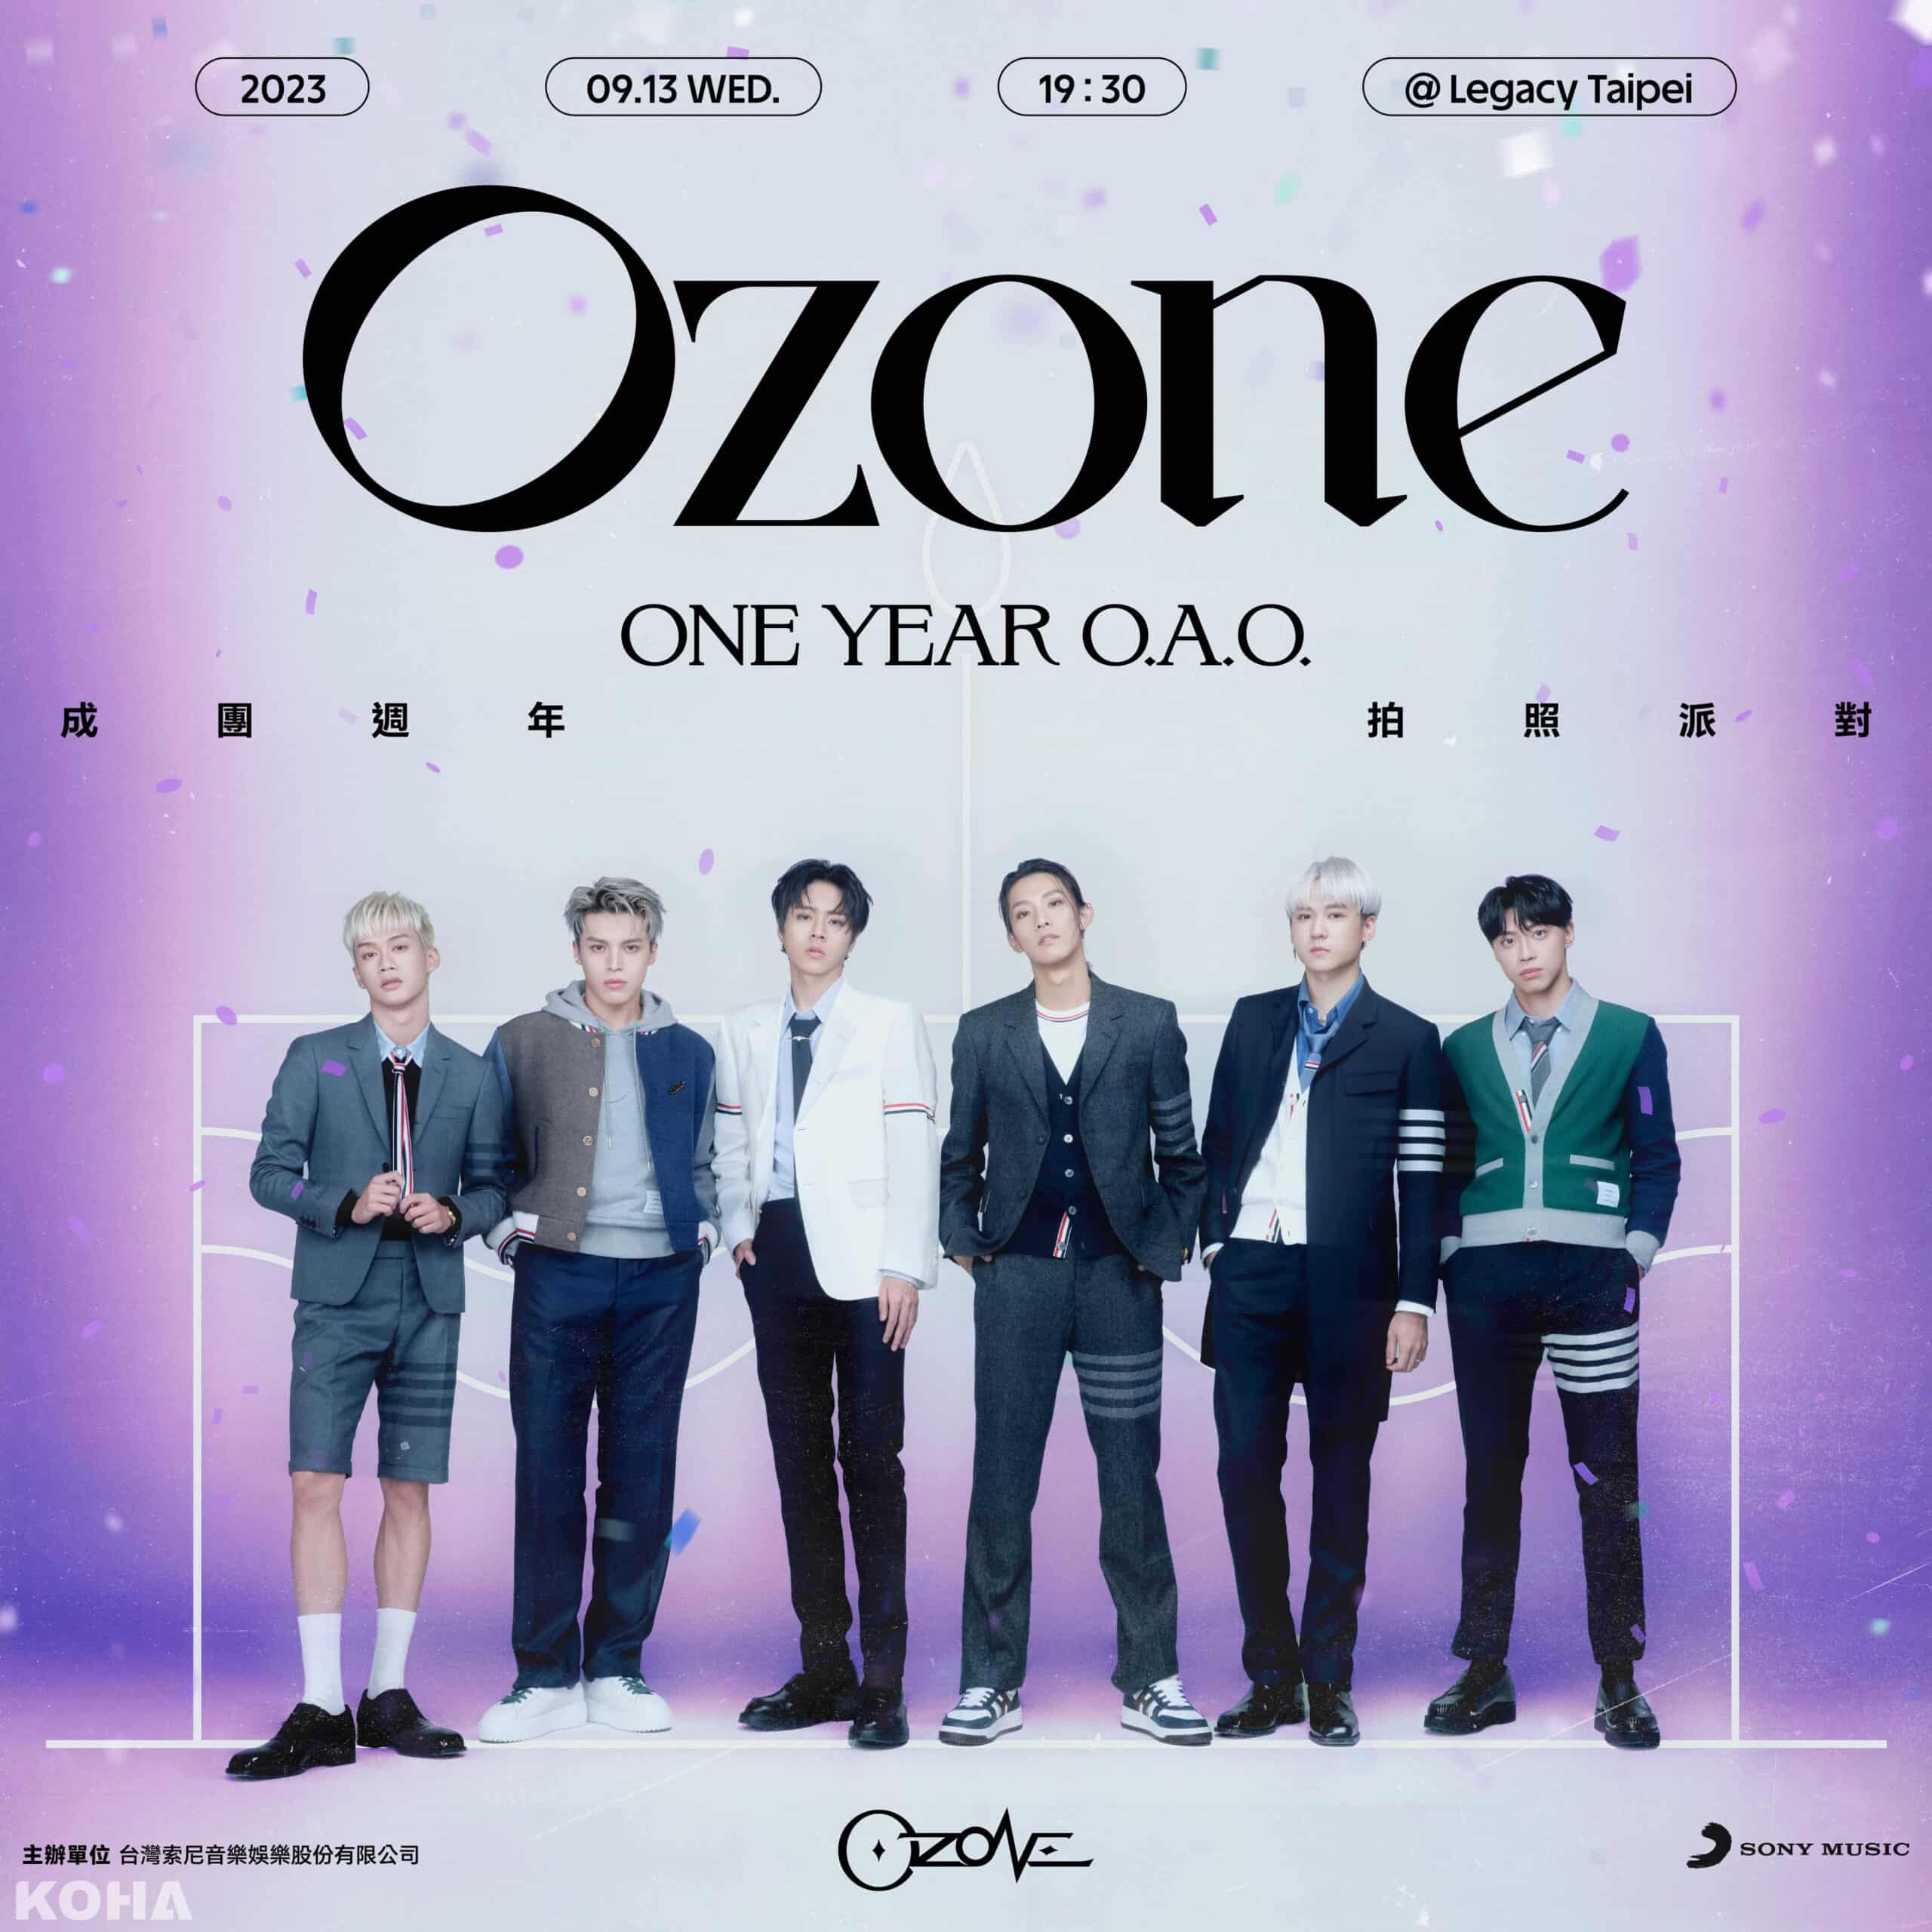 最強男團Ozone出道滿一週年 感謝粉絲支持 舉辦「One Year O.A.O.成團週年拍照派對」